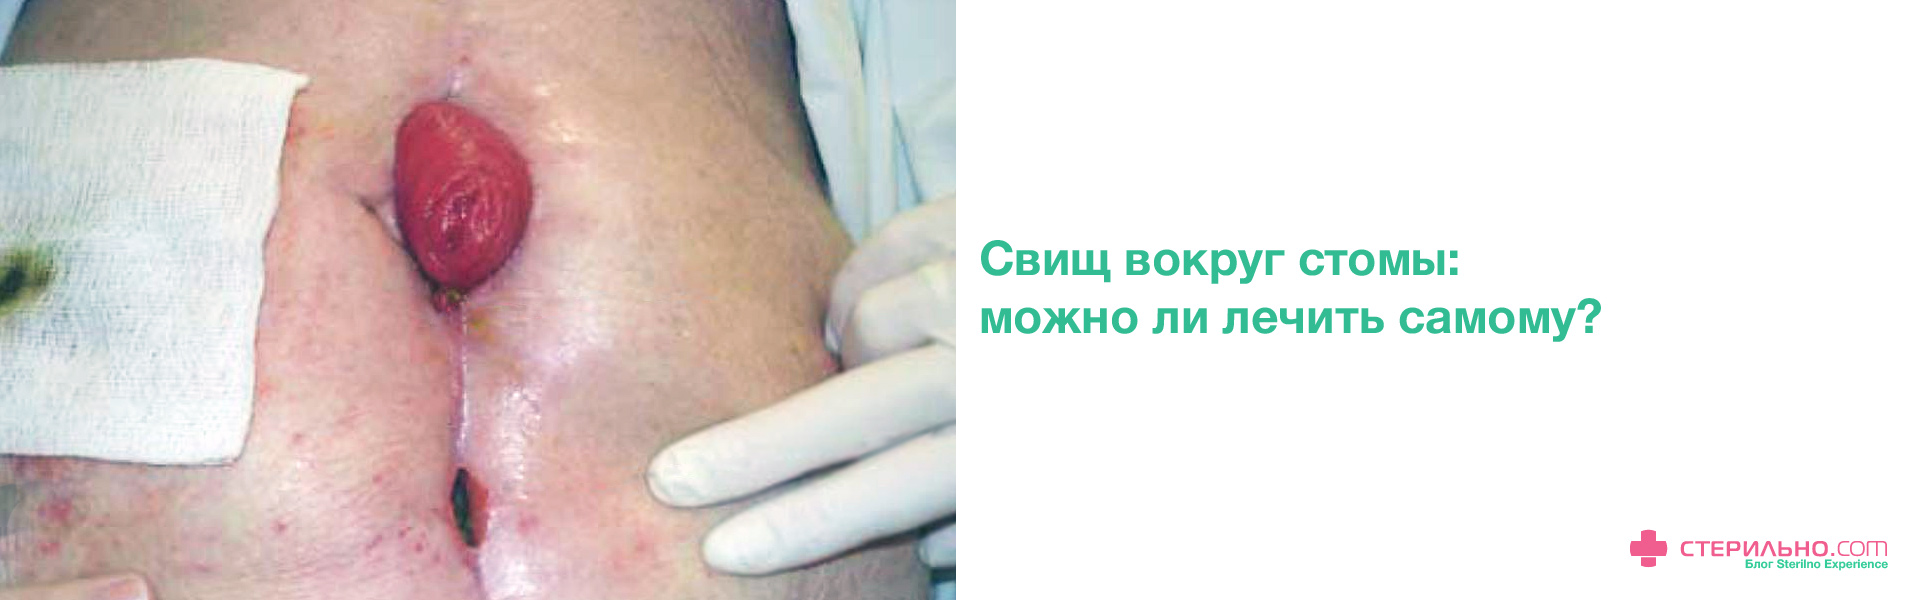 Лечение лигатурных свищей в Москве